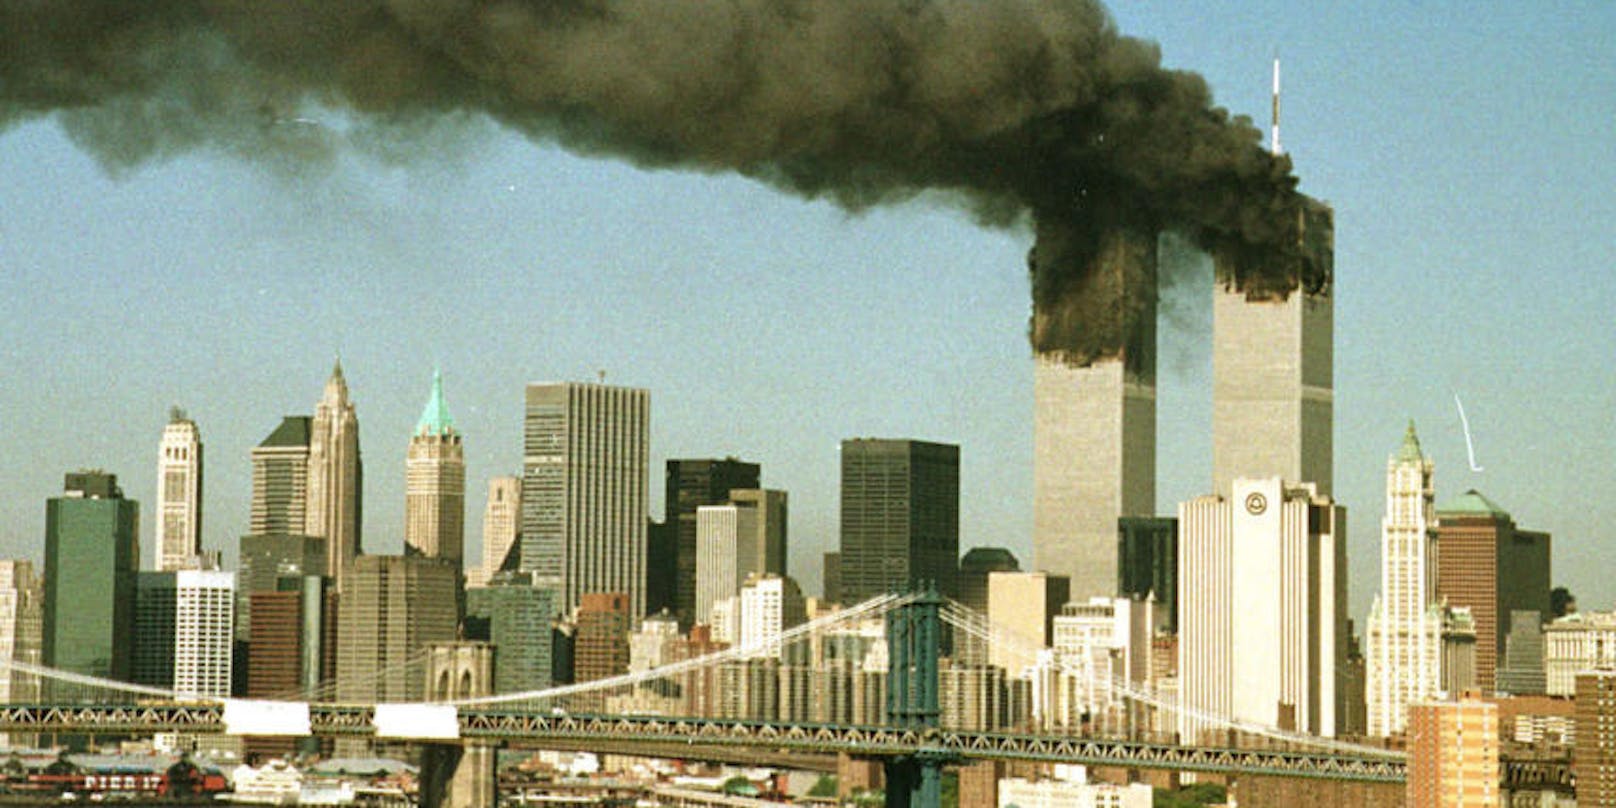 Bilder, die man nie vergisst: Die brennenden Türme des World Trade Centers am 11. September 2001 in New York.